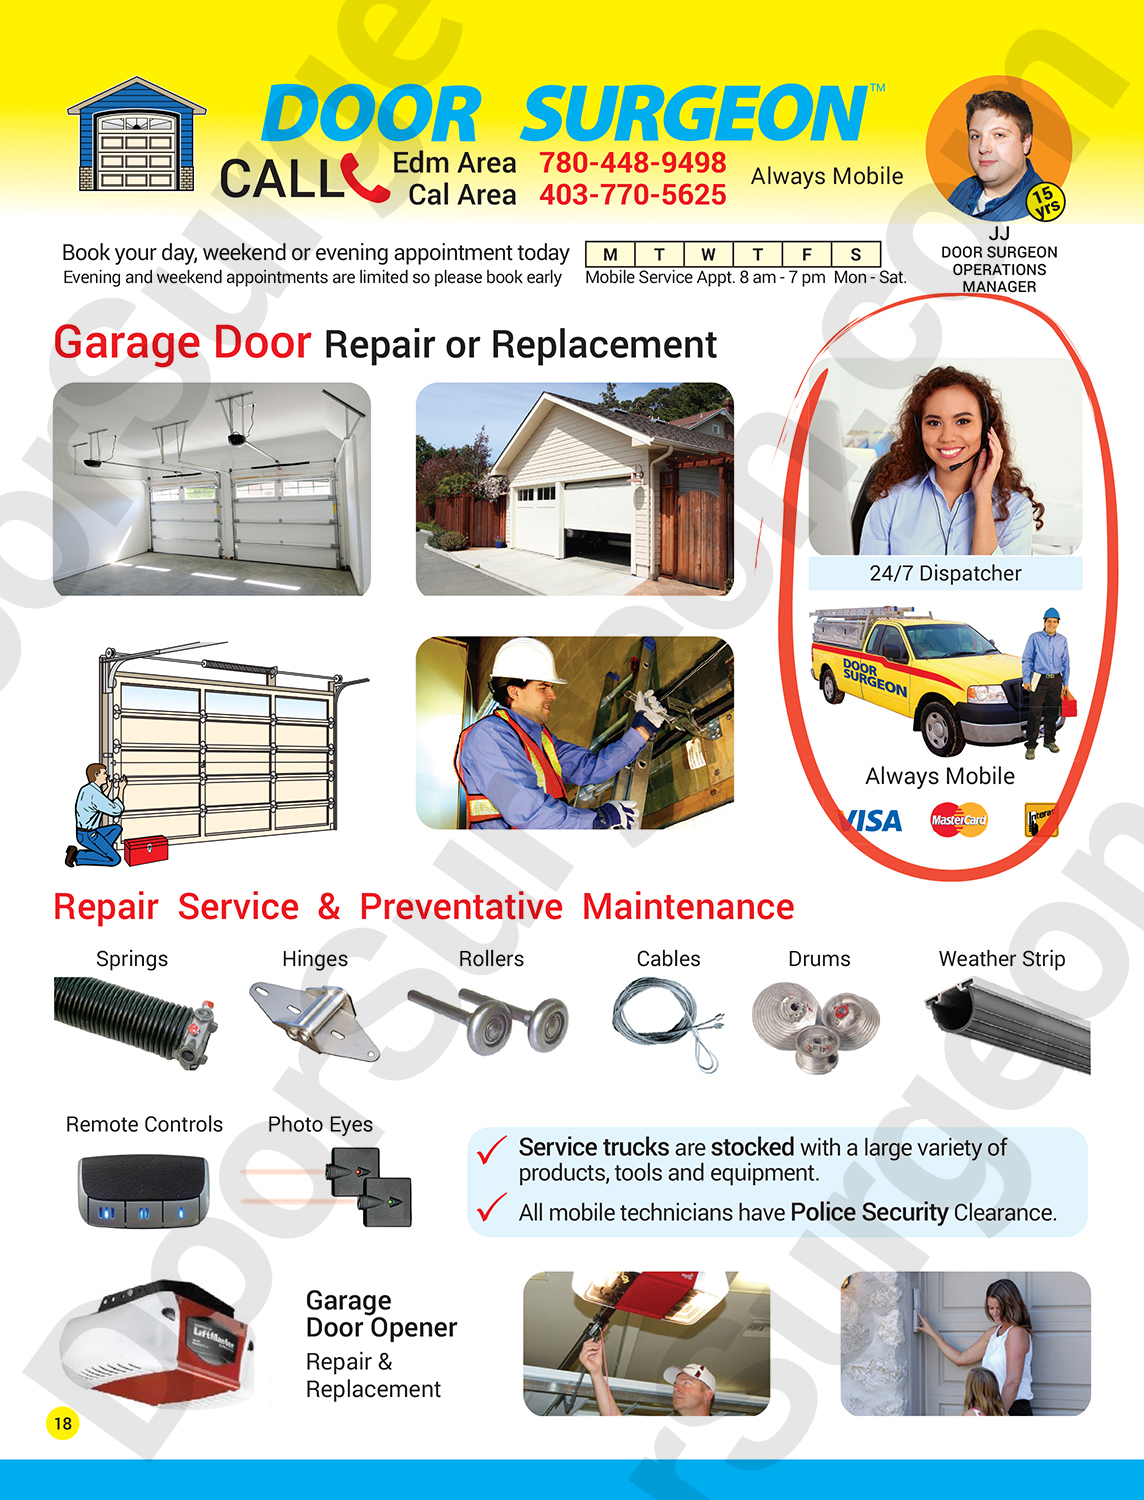 Door Surgeon garage door replacement services professional expert garage door repair technicians.